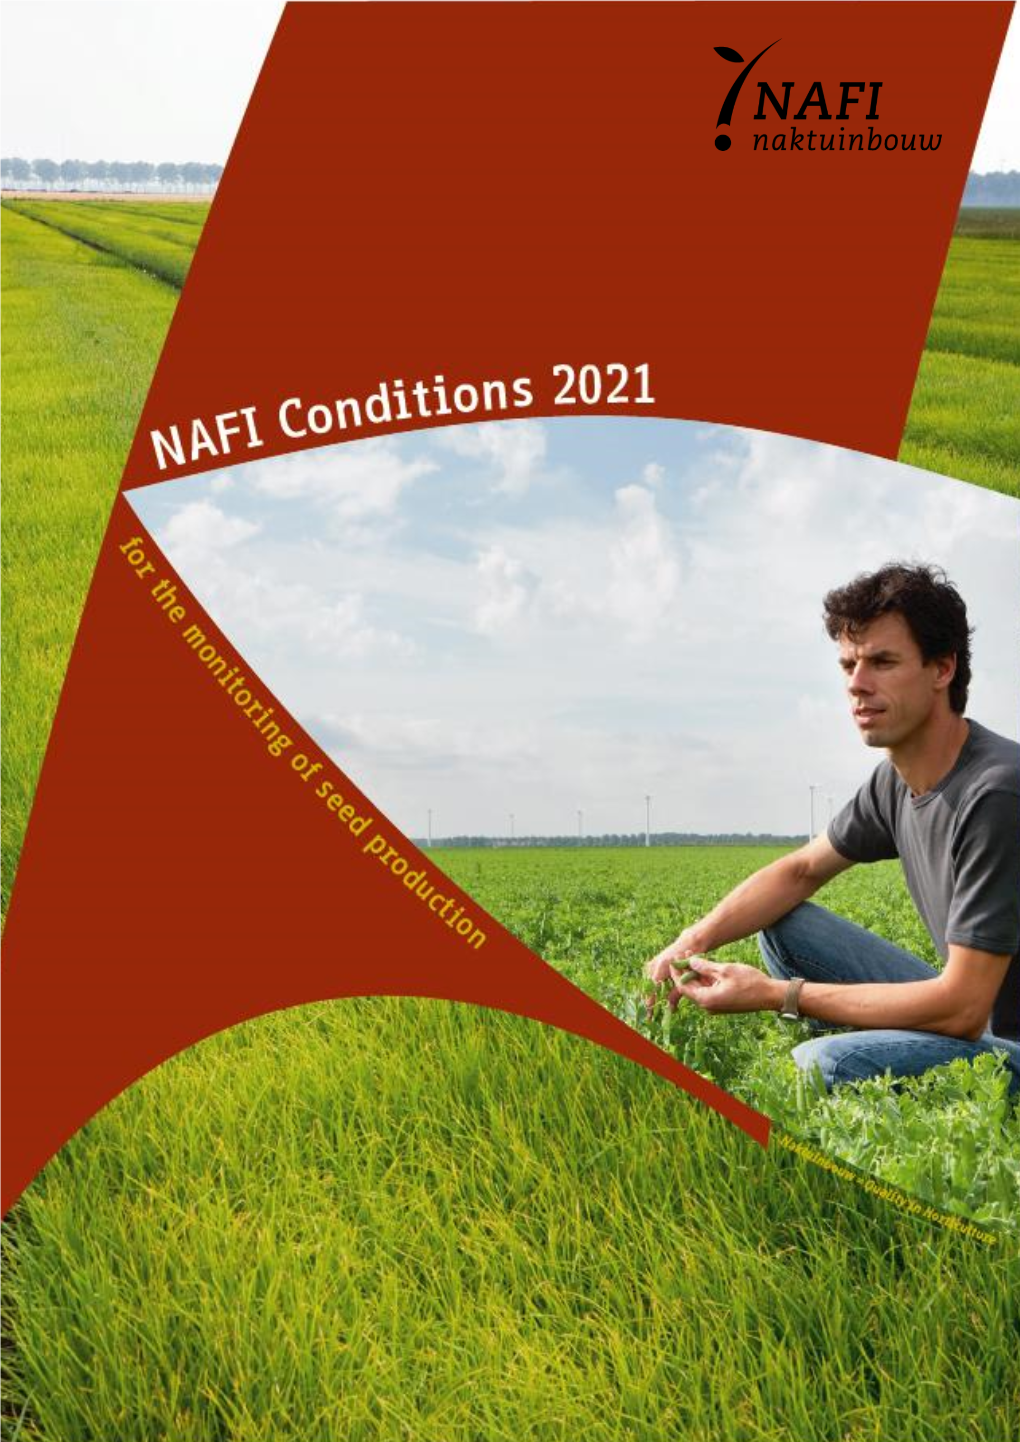 NAFI Conditions 2021 Compared to NAFI Conditions 2020)